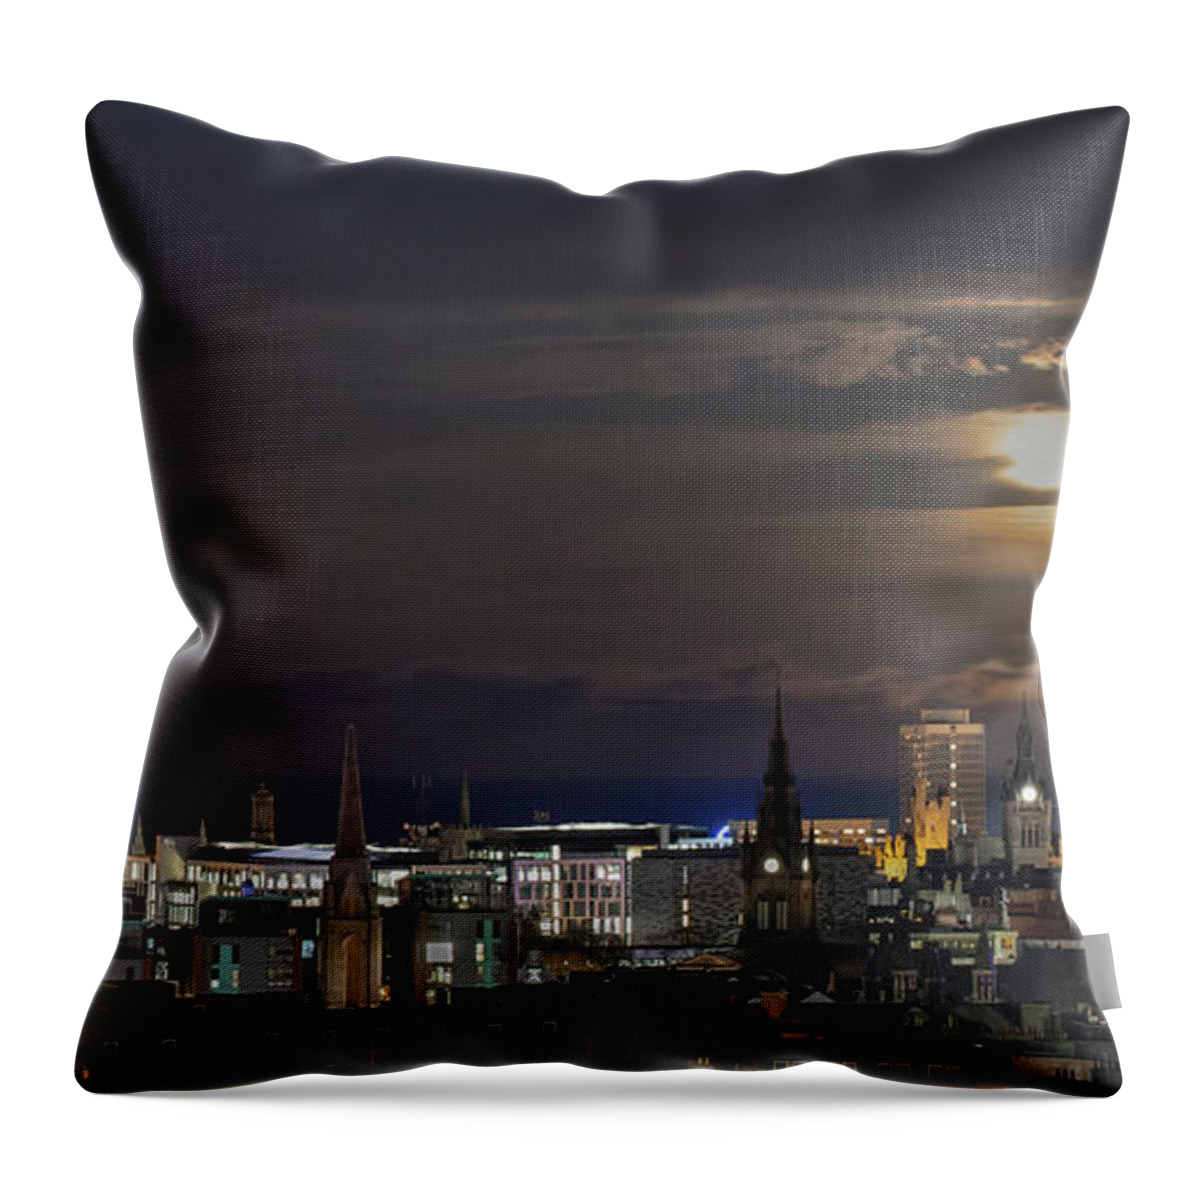 Aberdeen Throw Pillow featuring the photograph Aberdeen Skyline by Veli Bariskan